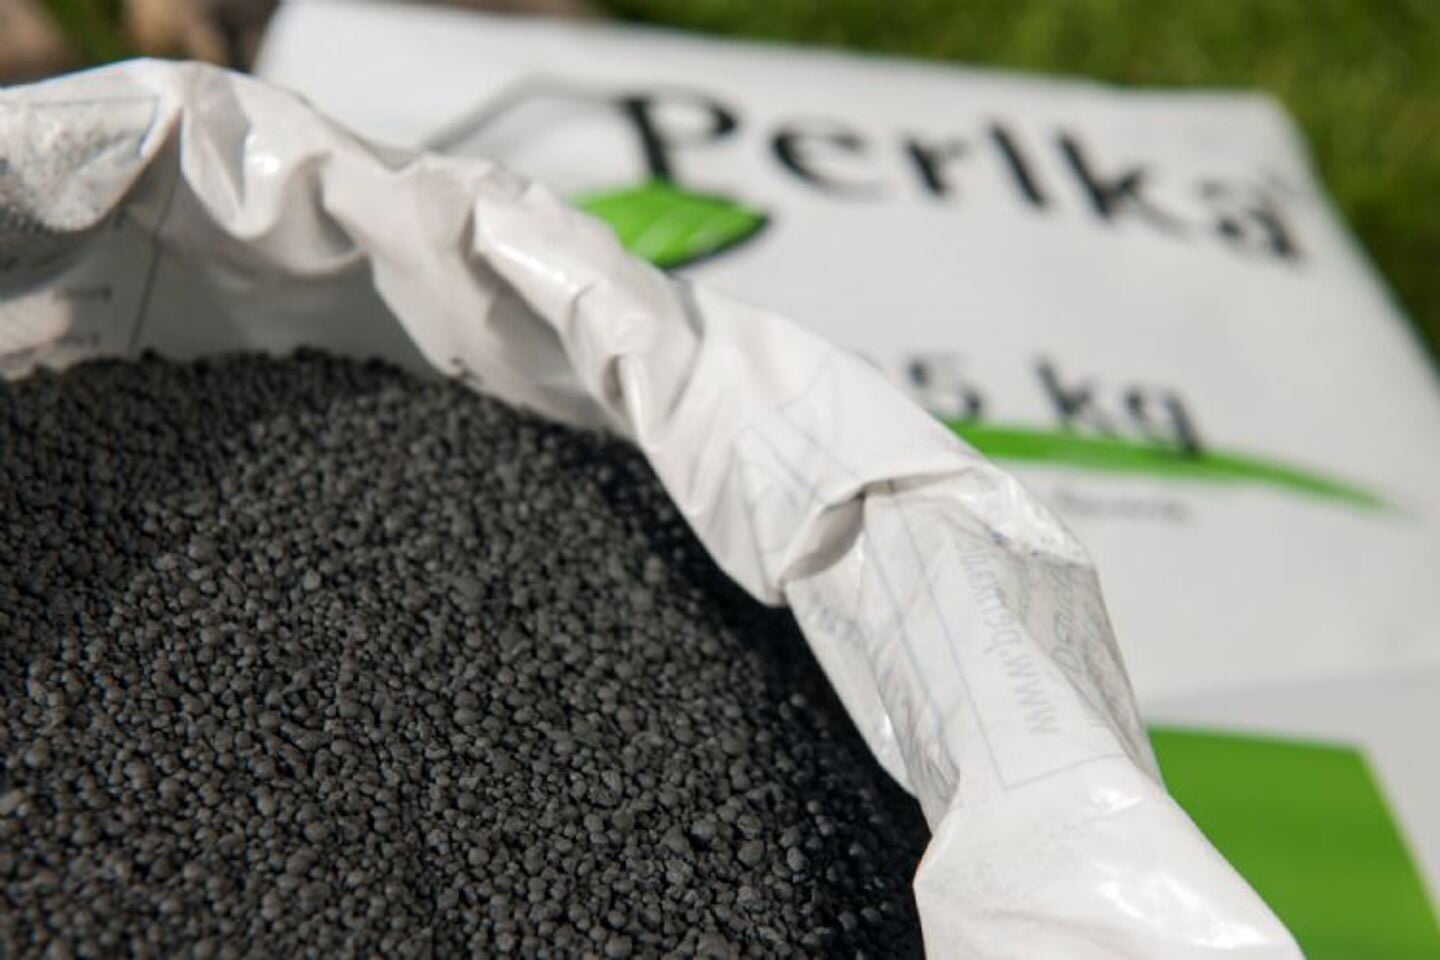 Perlka® is een unieke minerale meststof, die zijn weerga niet kent